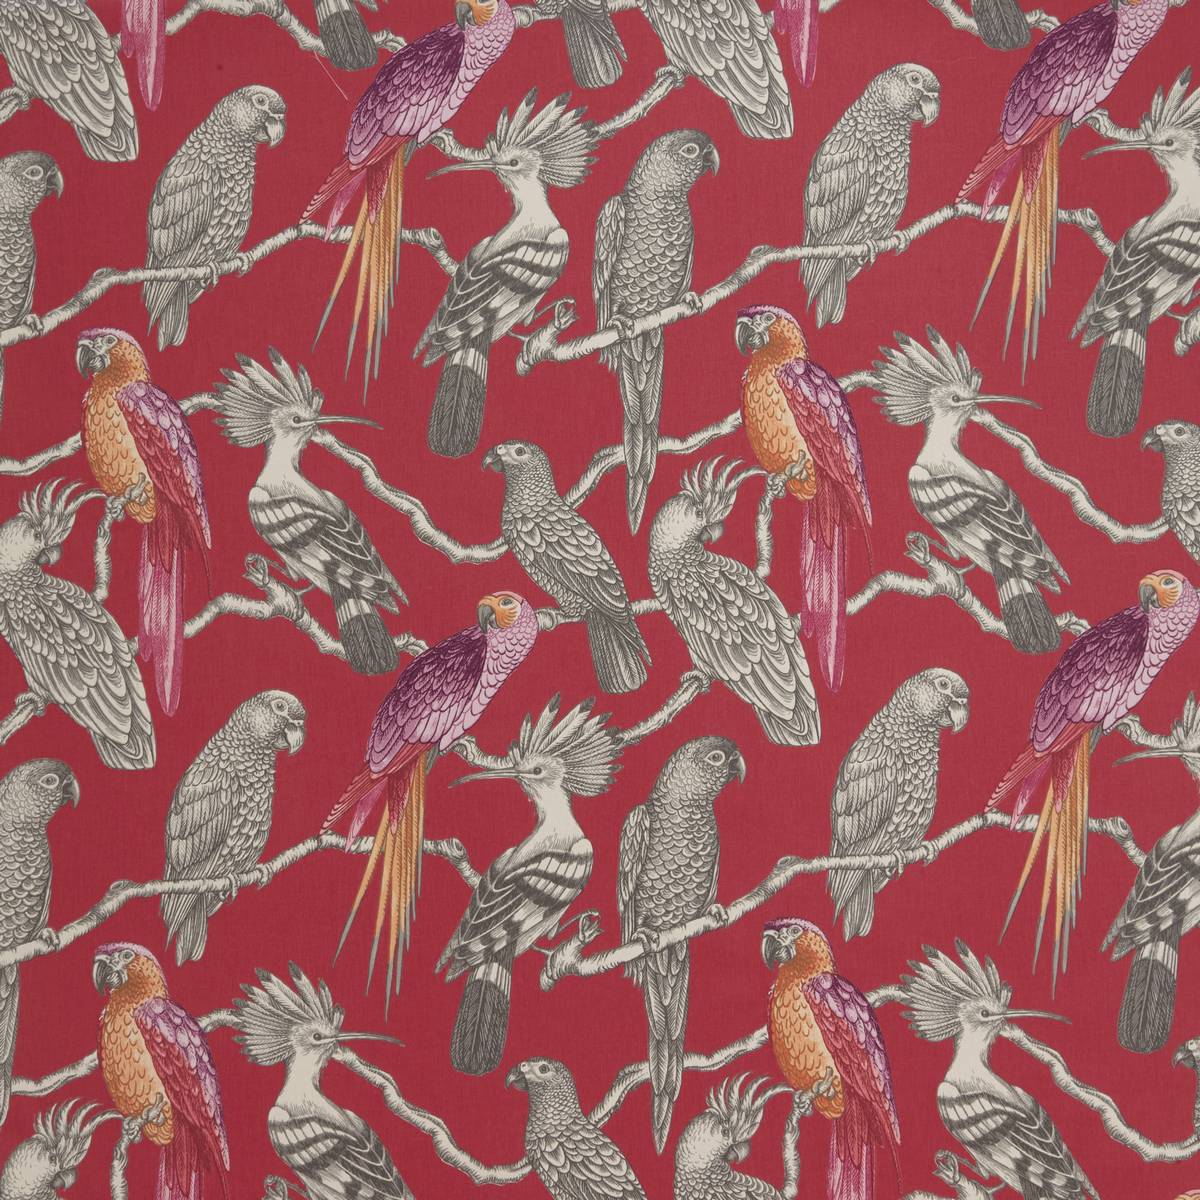 Aviary Pomegranate Fabric by iLiv